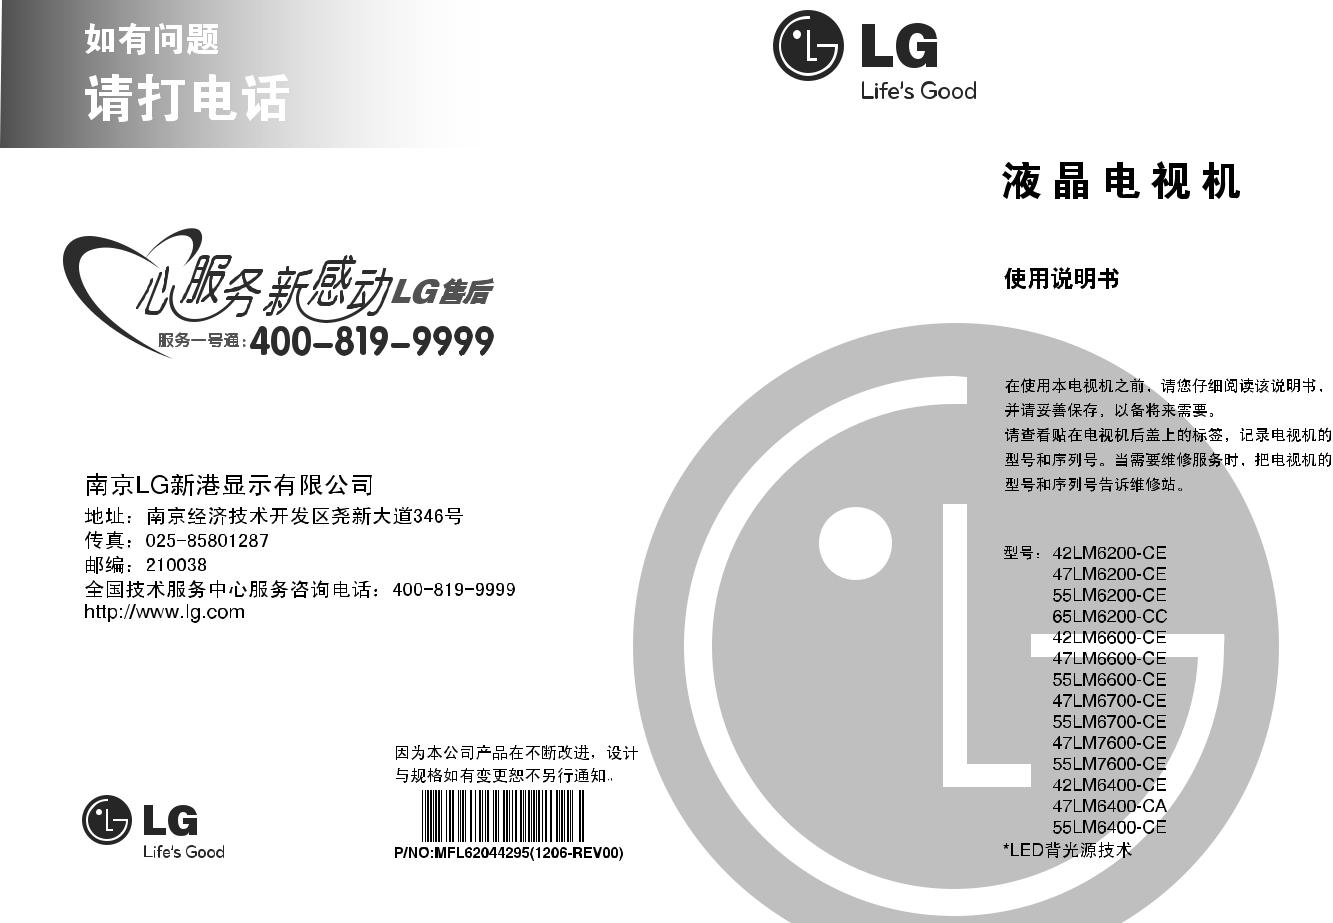 LG 42LM6600-CE, 47LM7600-CE, 47LM6700-CE, 47LM6600-CE, 55LM6600-CE Users guide